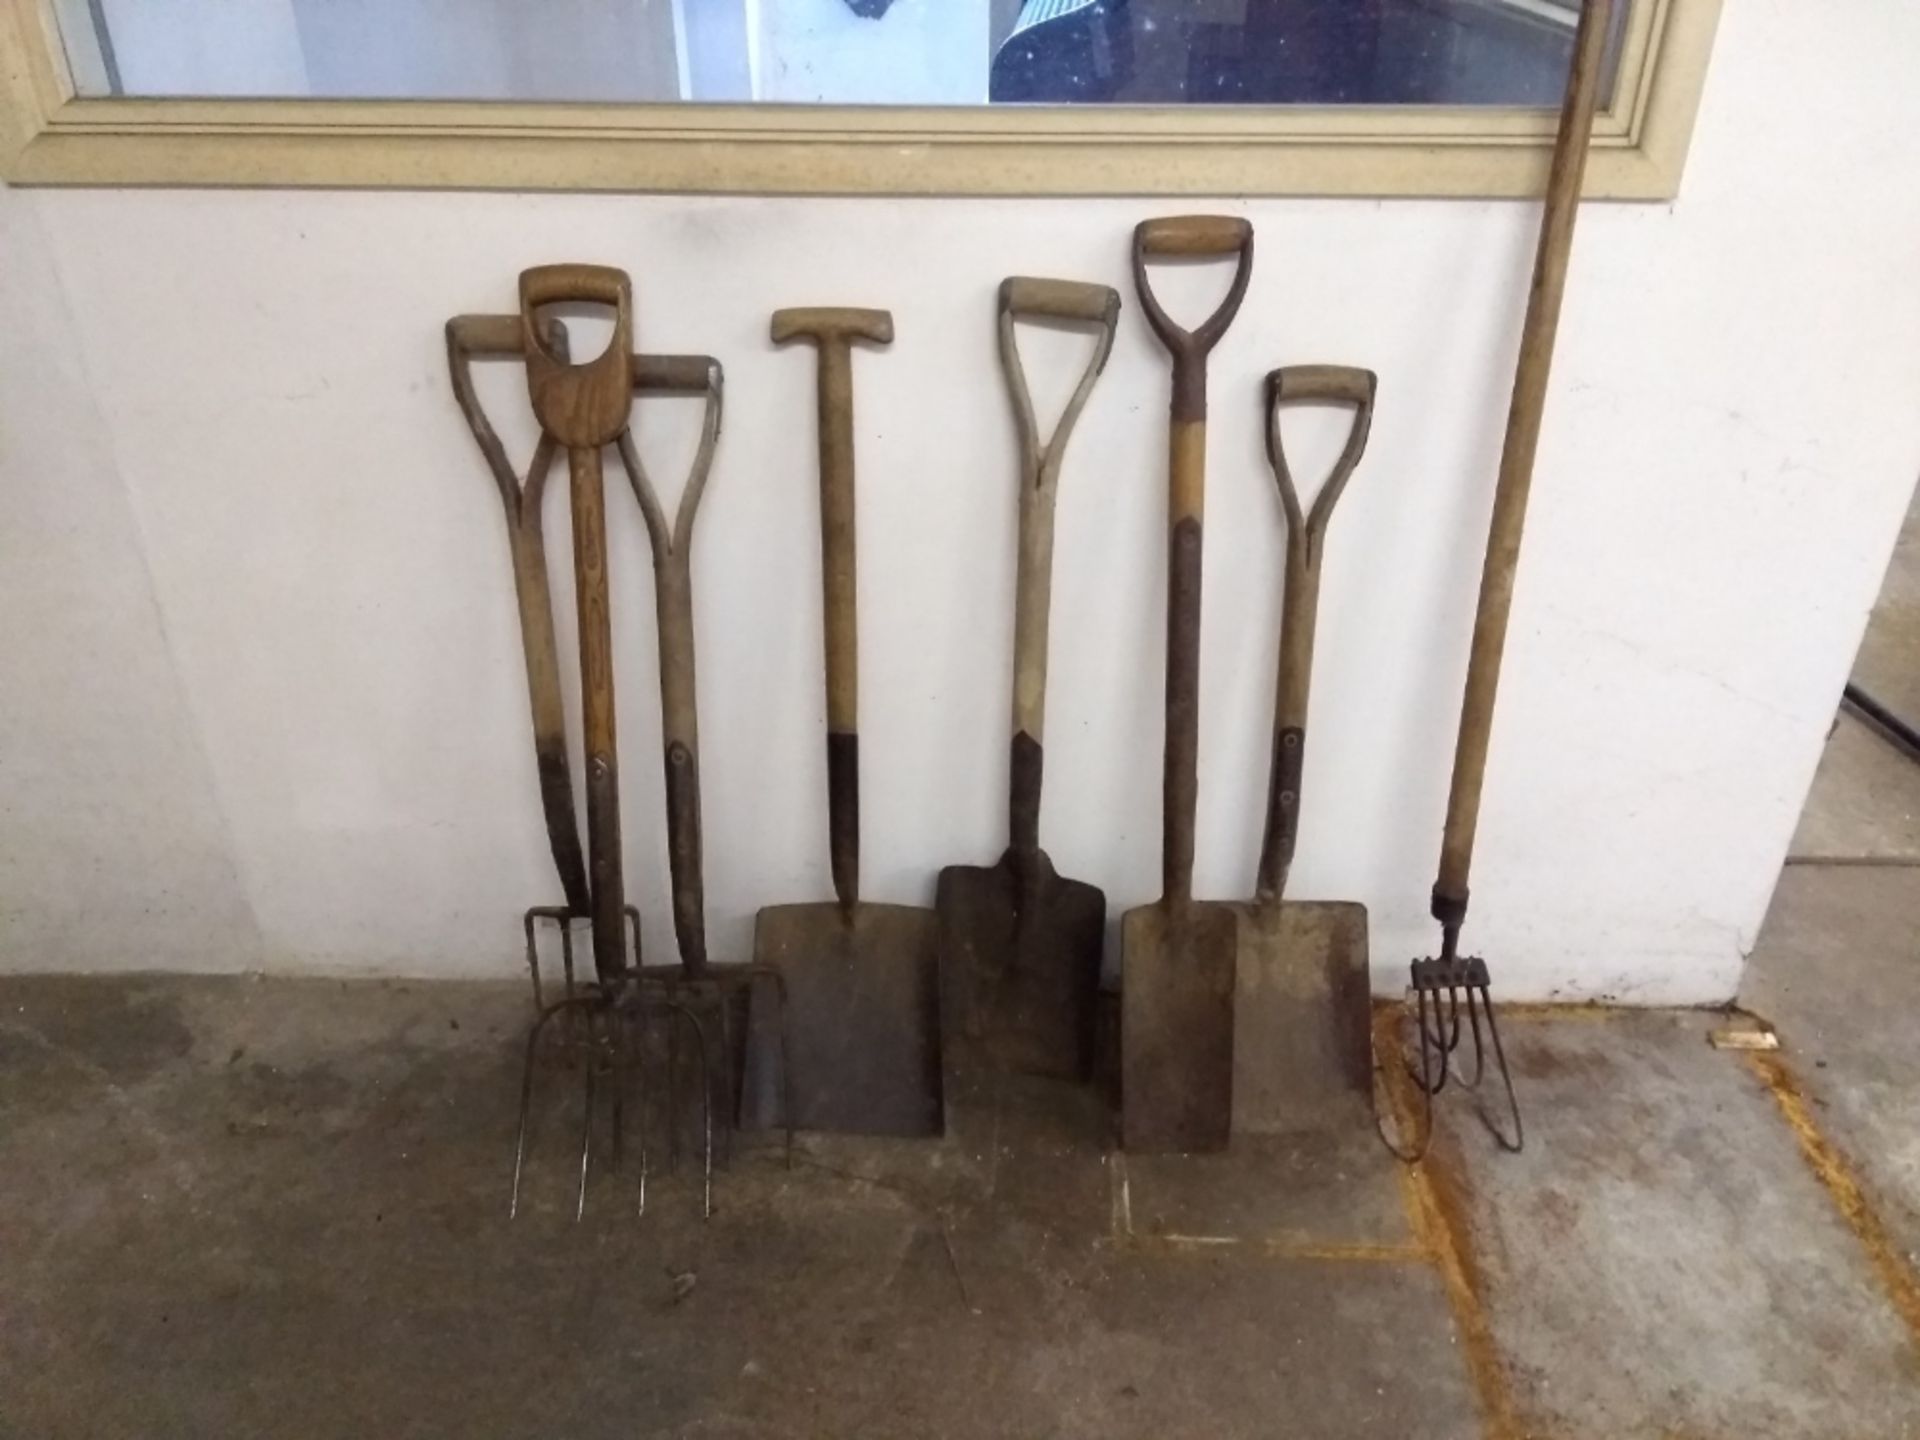 3 x wooden handled forks - 4 x shovels - 1 x hoe fork